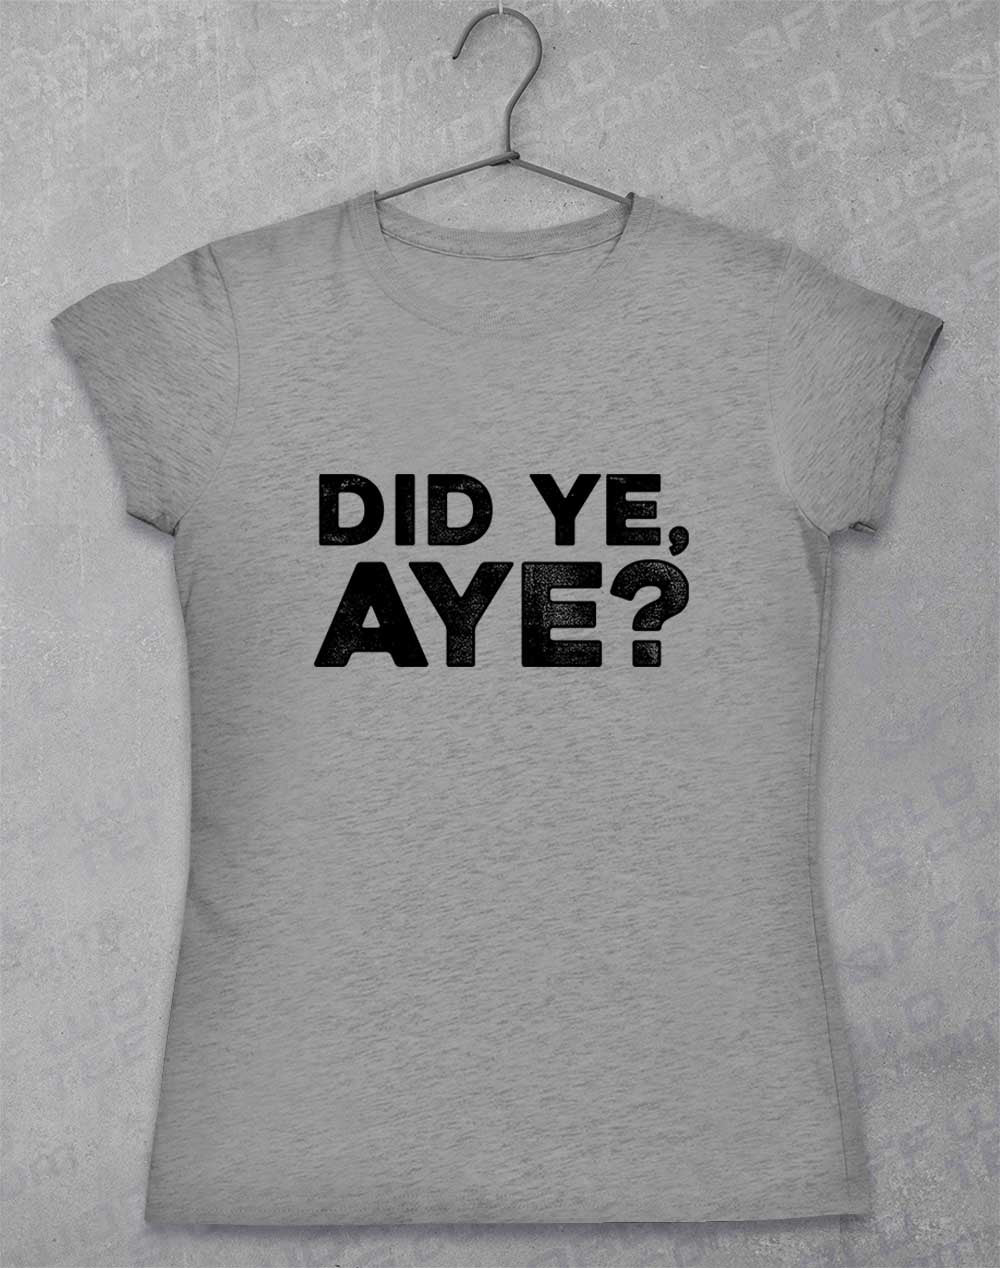 Sport Grey - Did Ye Aye Women's T-Shirt